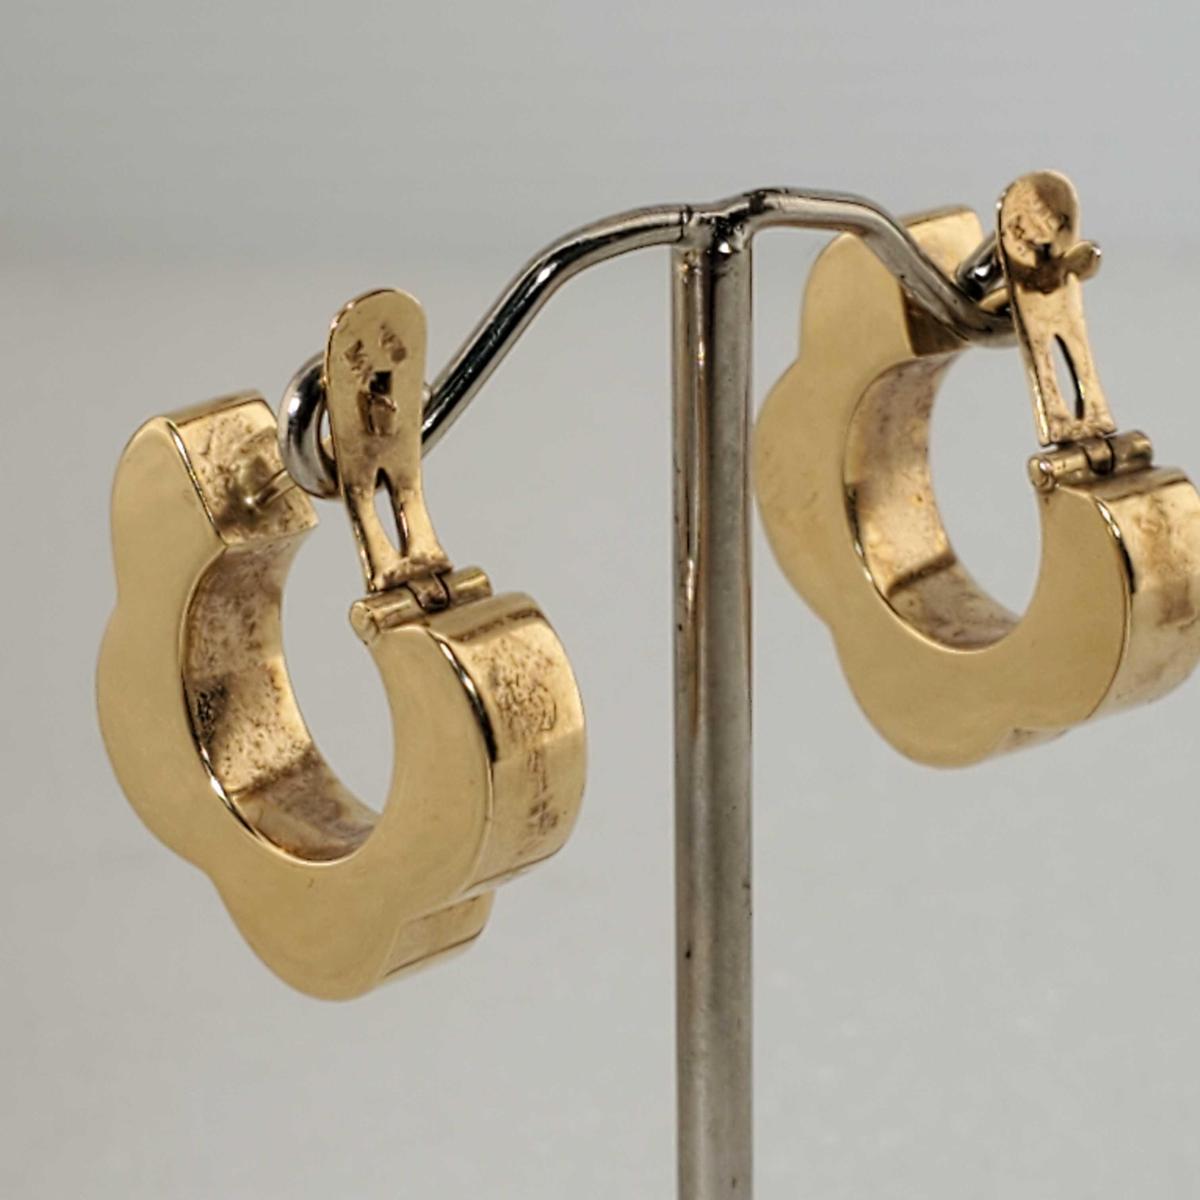 Pair Of 14K Yellow Gold MCM Flower Design Hoop Earrings